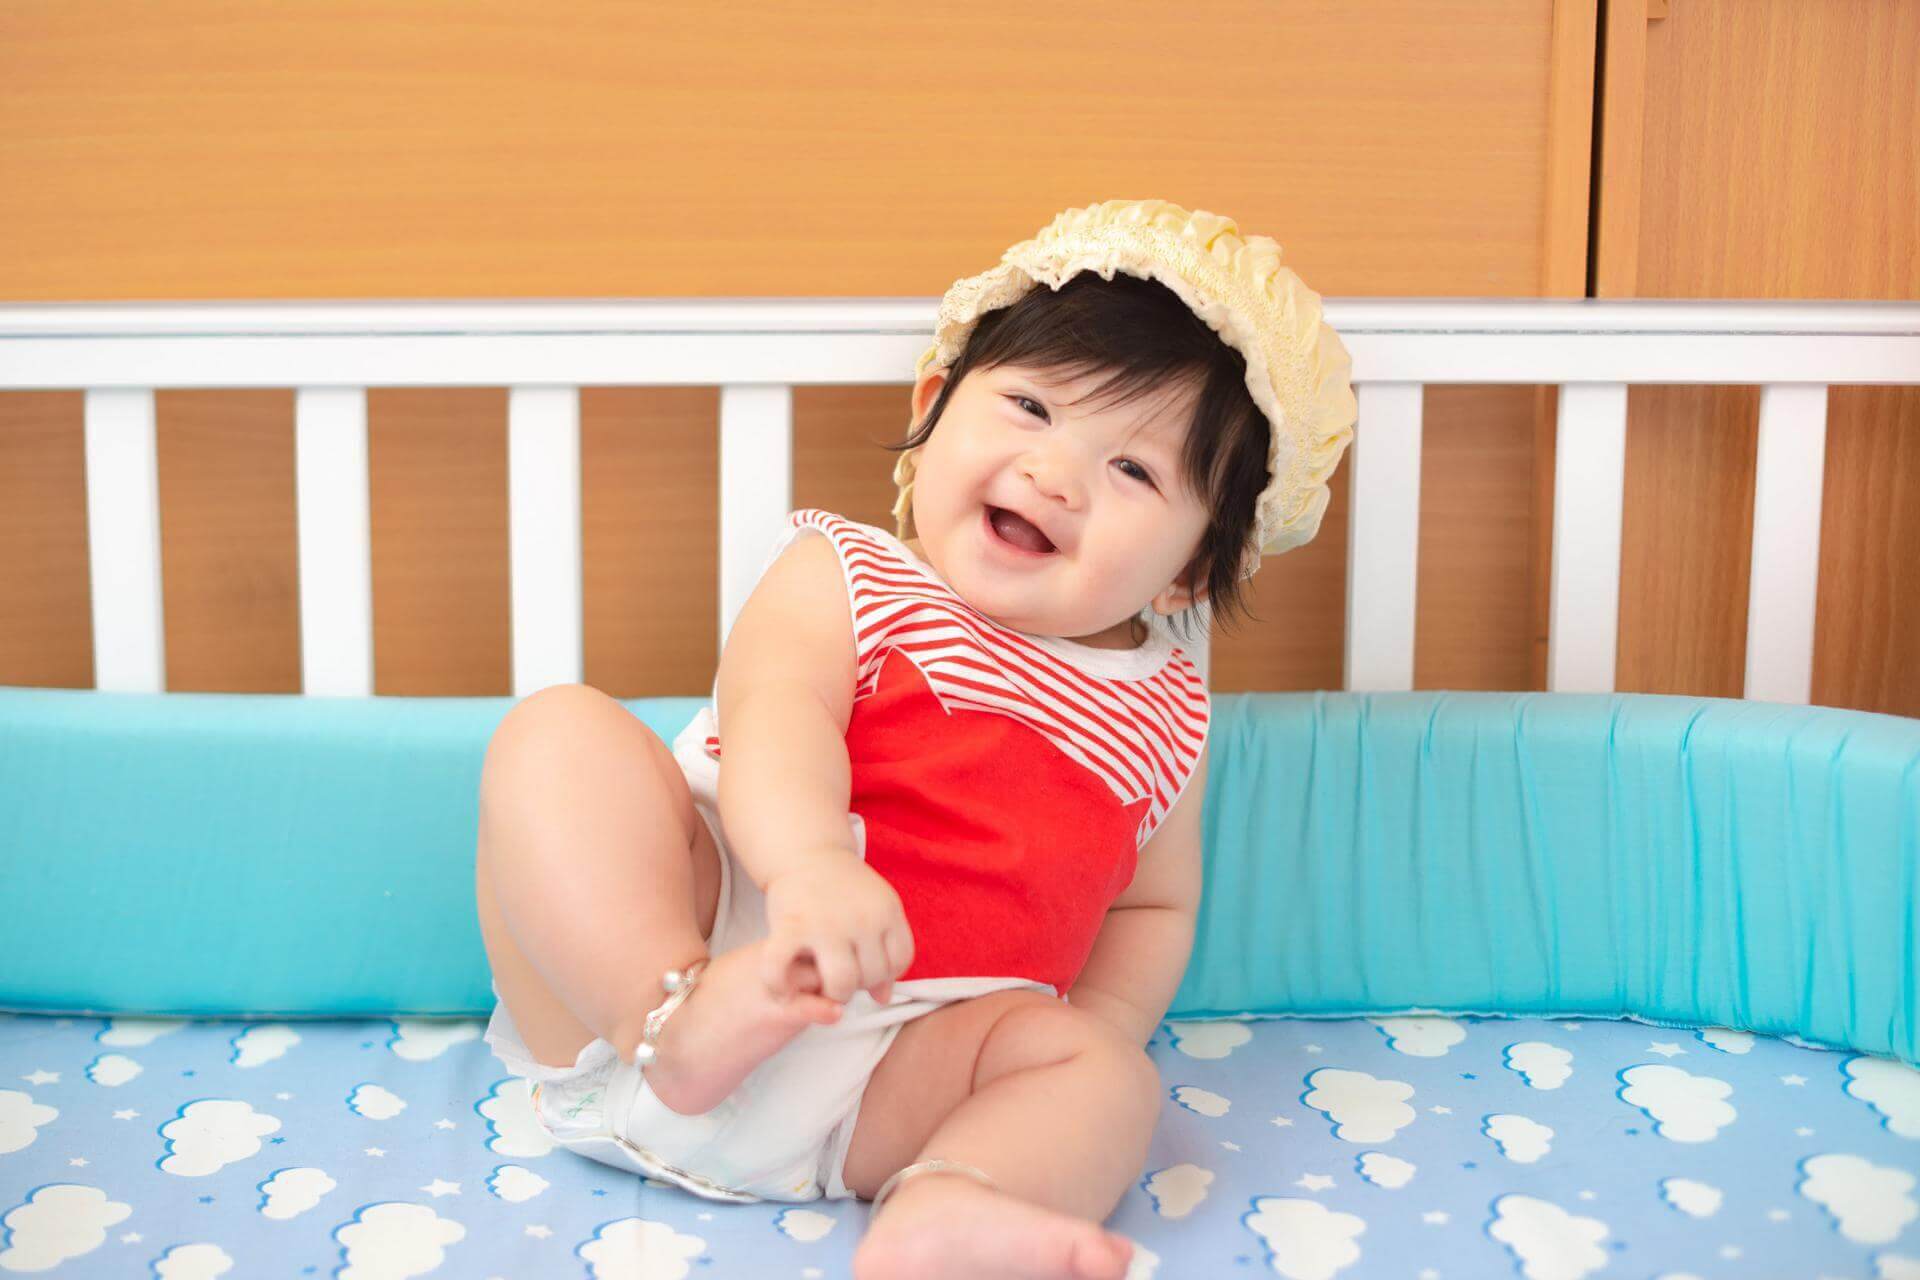  วิธีป้องกันผื่นผ้าอ้อมเพื่อสุขภาพและความสุขของทารก